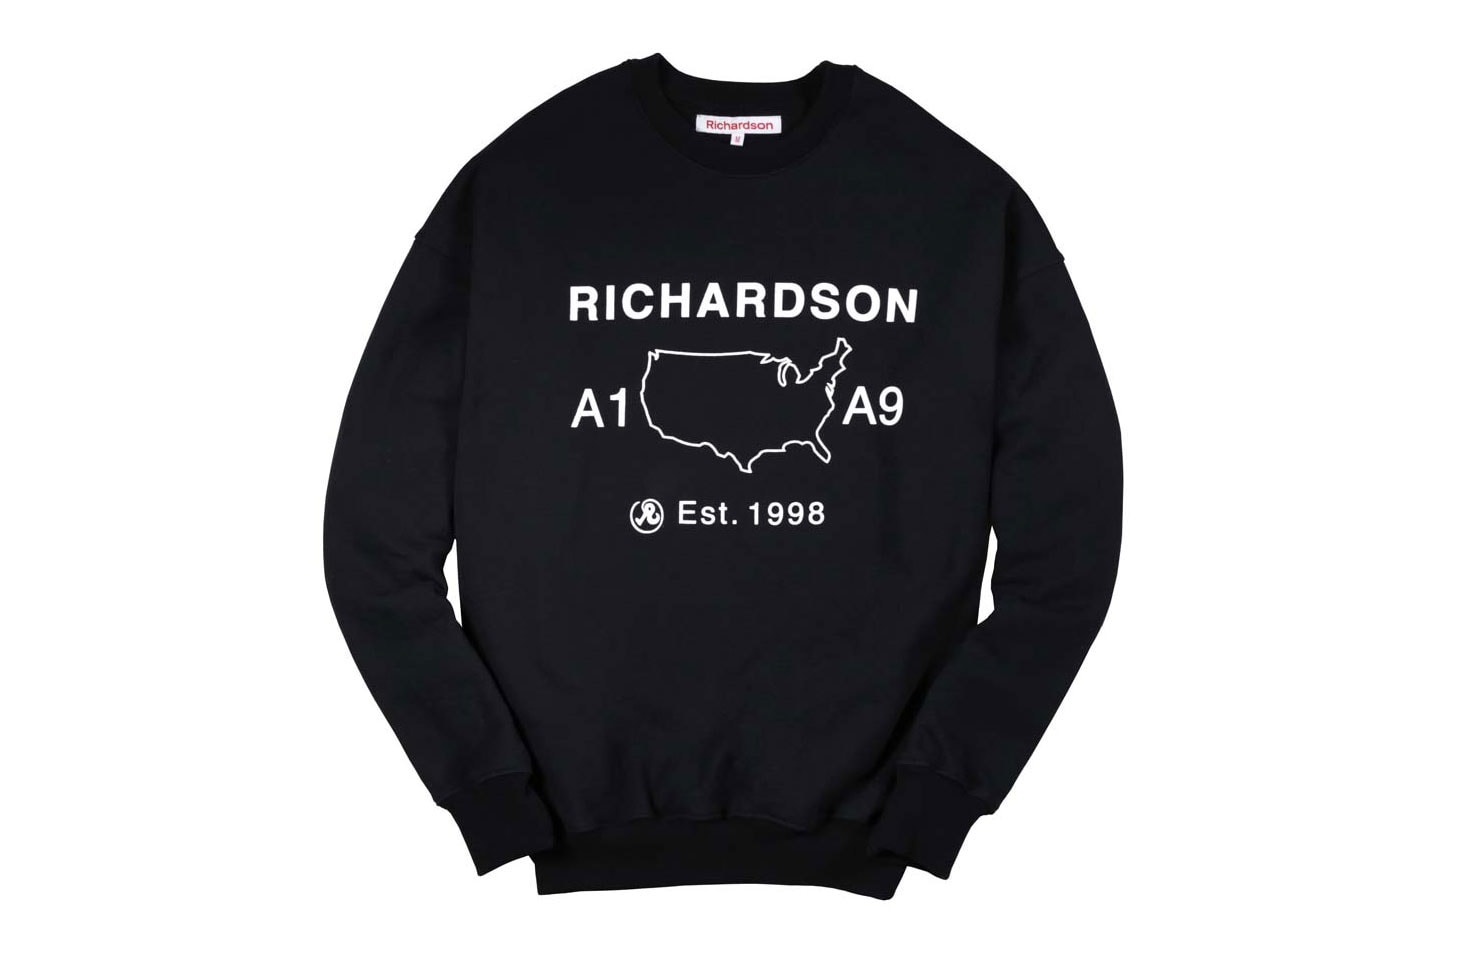 Richardson A9 Collection Merch w/ Kim Kardashian